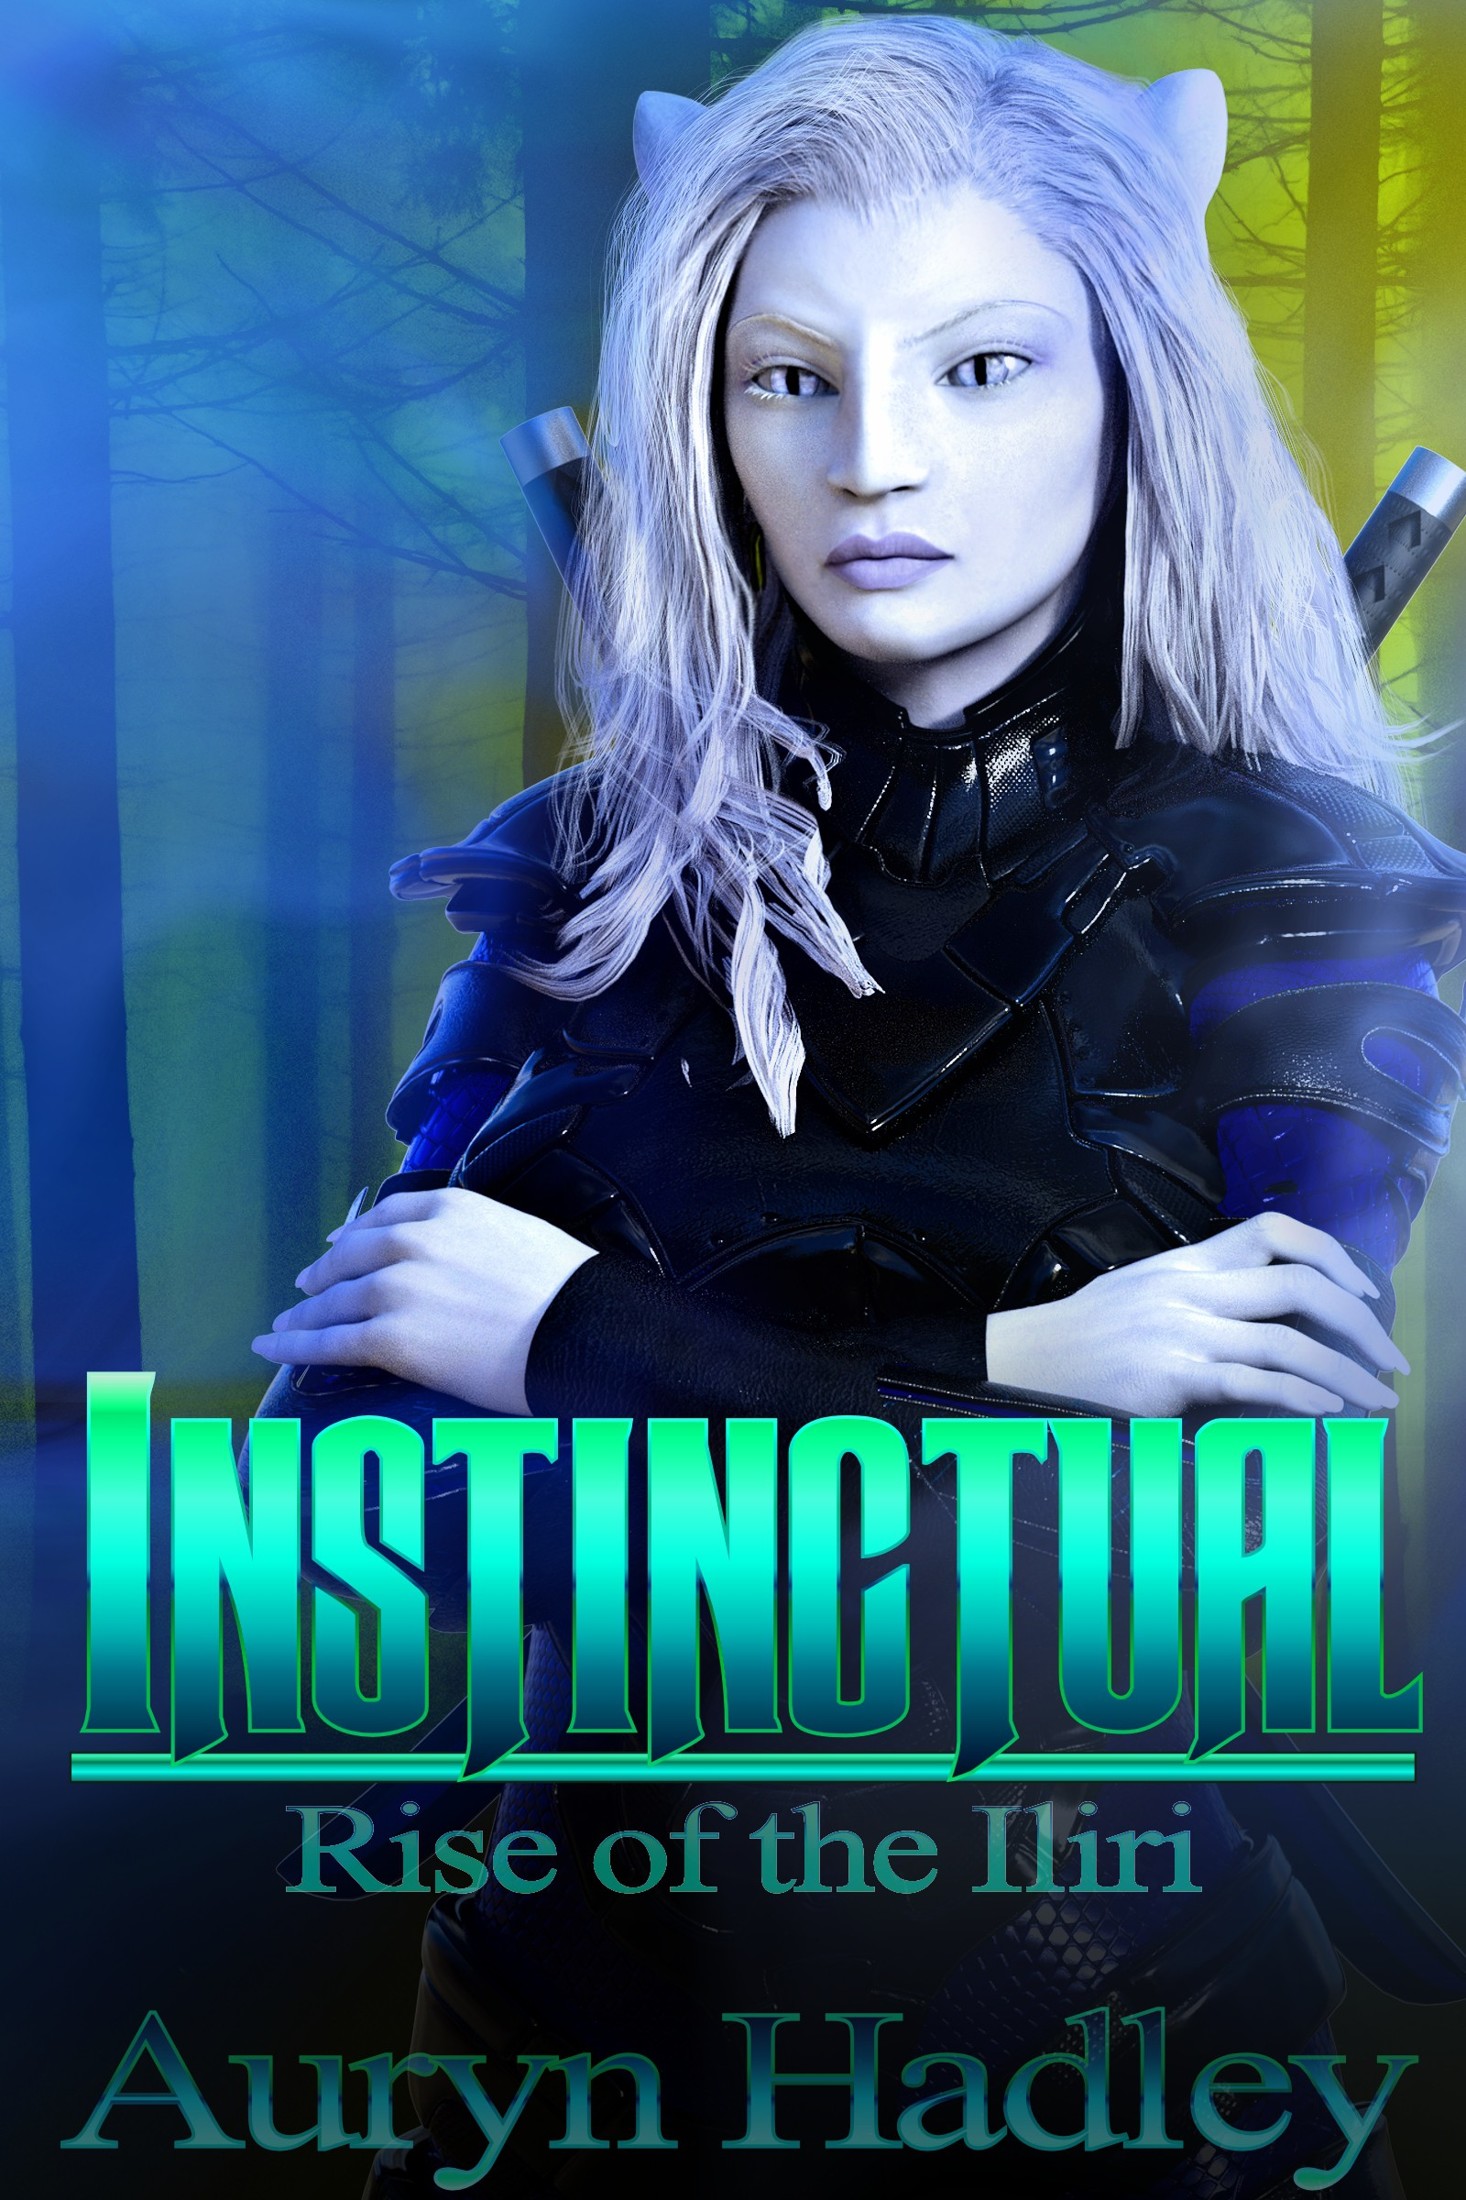 Instinctual by Auryn Hadley